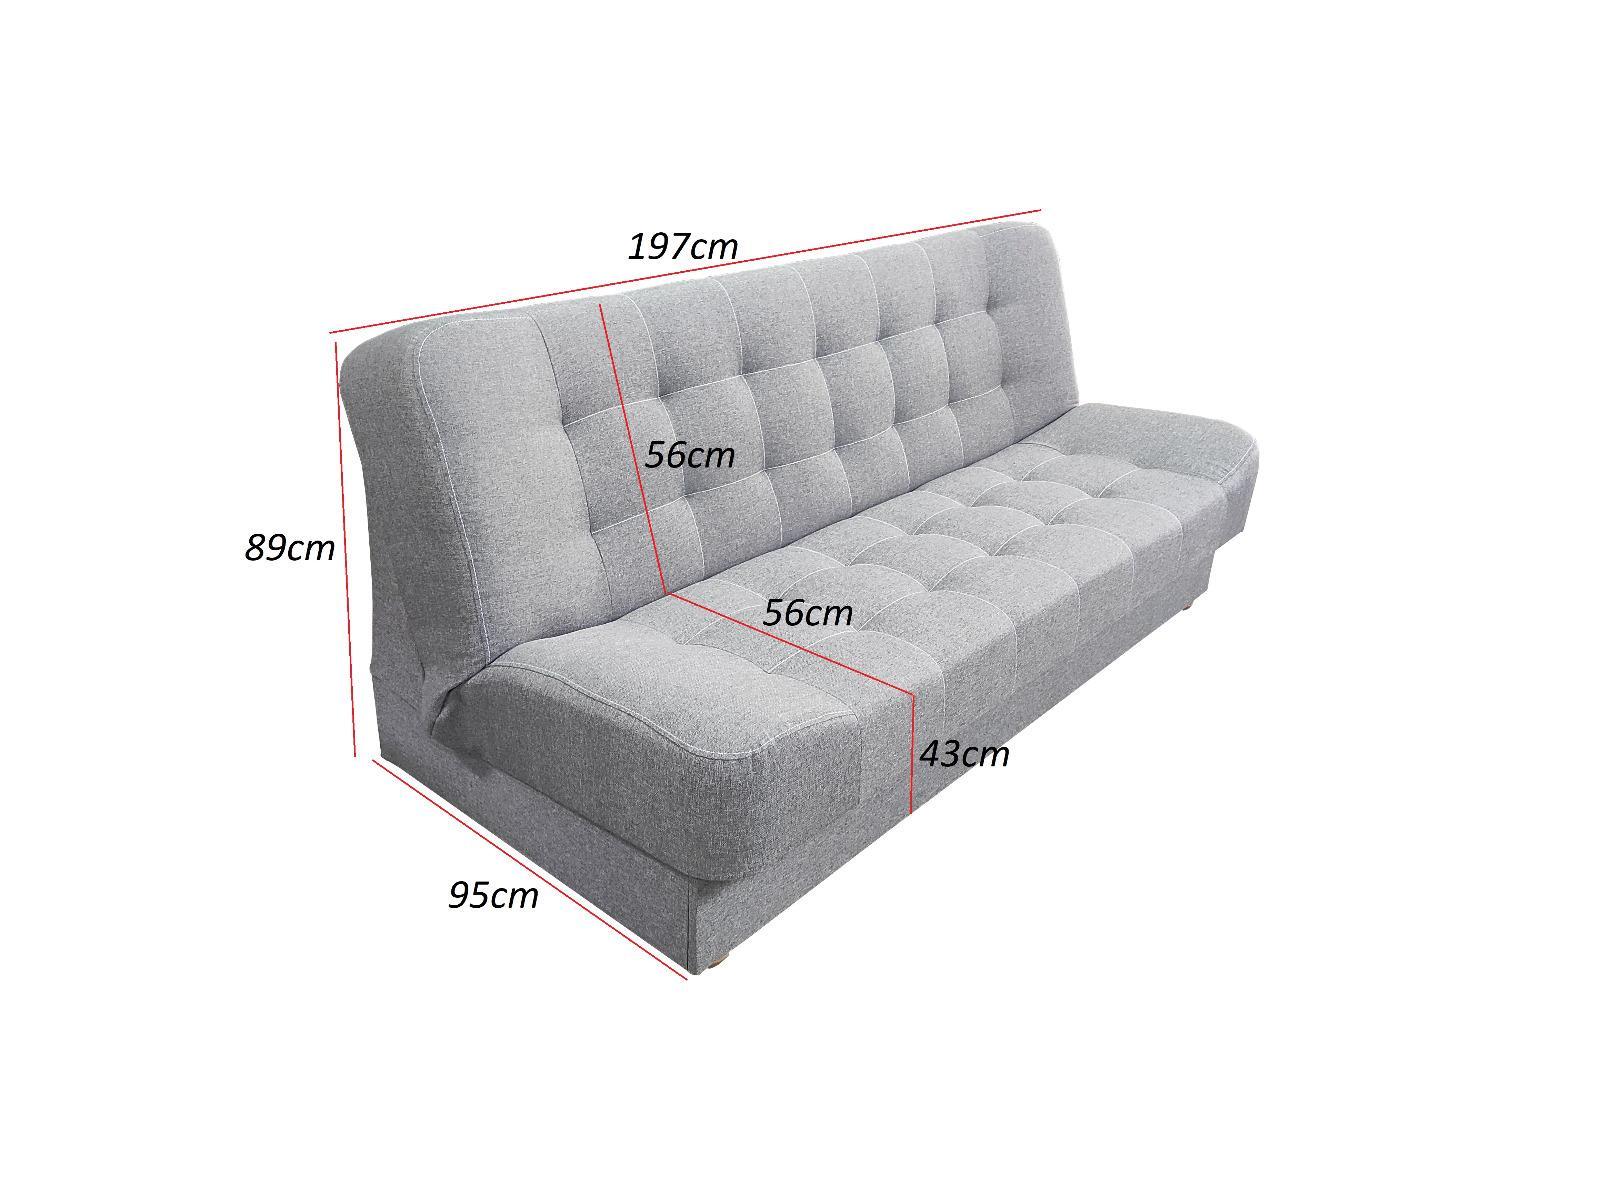 Pikowana kanapa na nóżkach rozkładana sofa z pojemnikiem na pościel. Różne warianty nr. 2